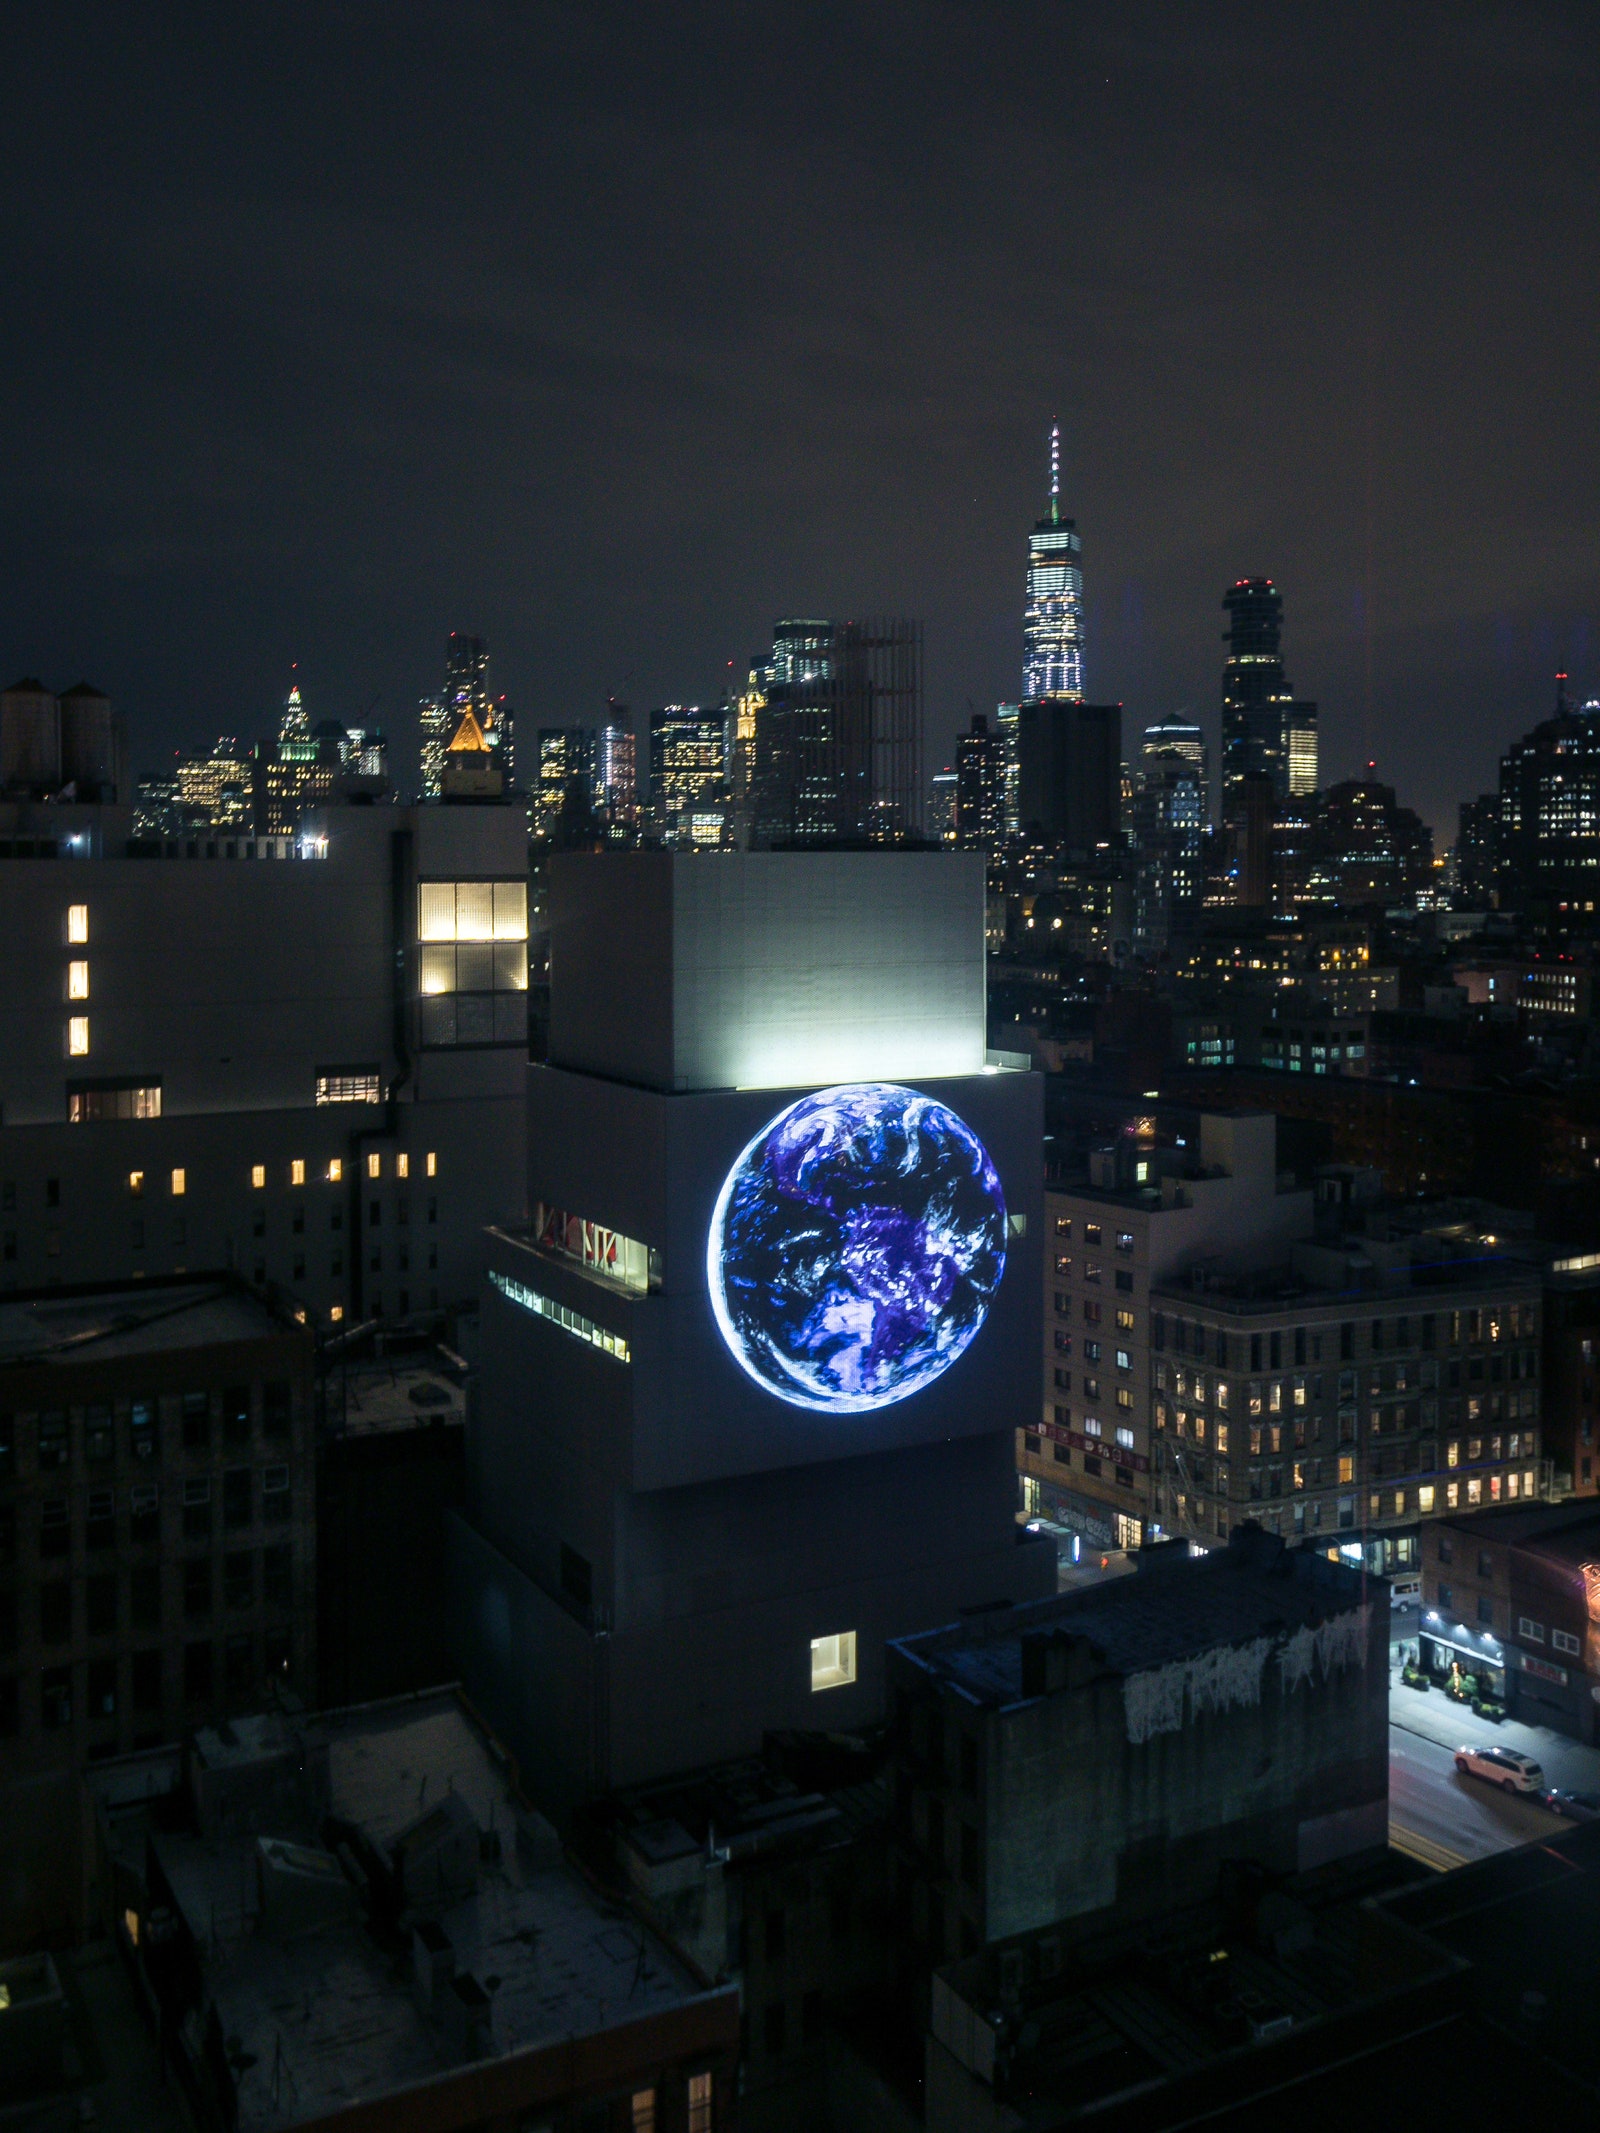 blu Marble проект художника Себастьяна Эрразуриcа в НьюЙорке